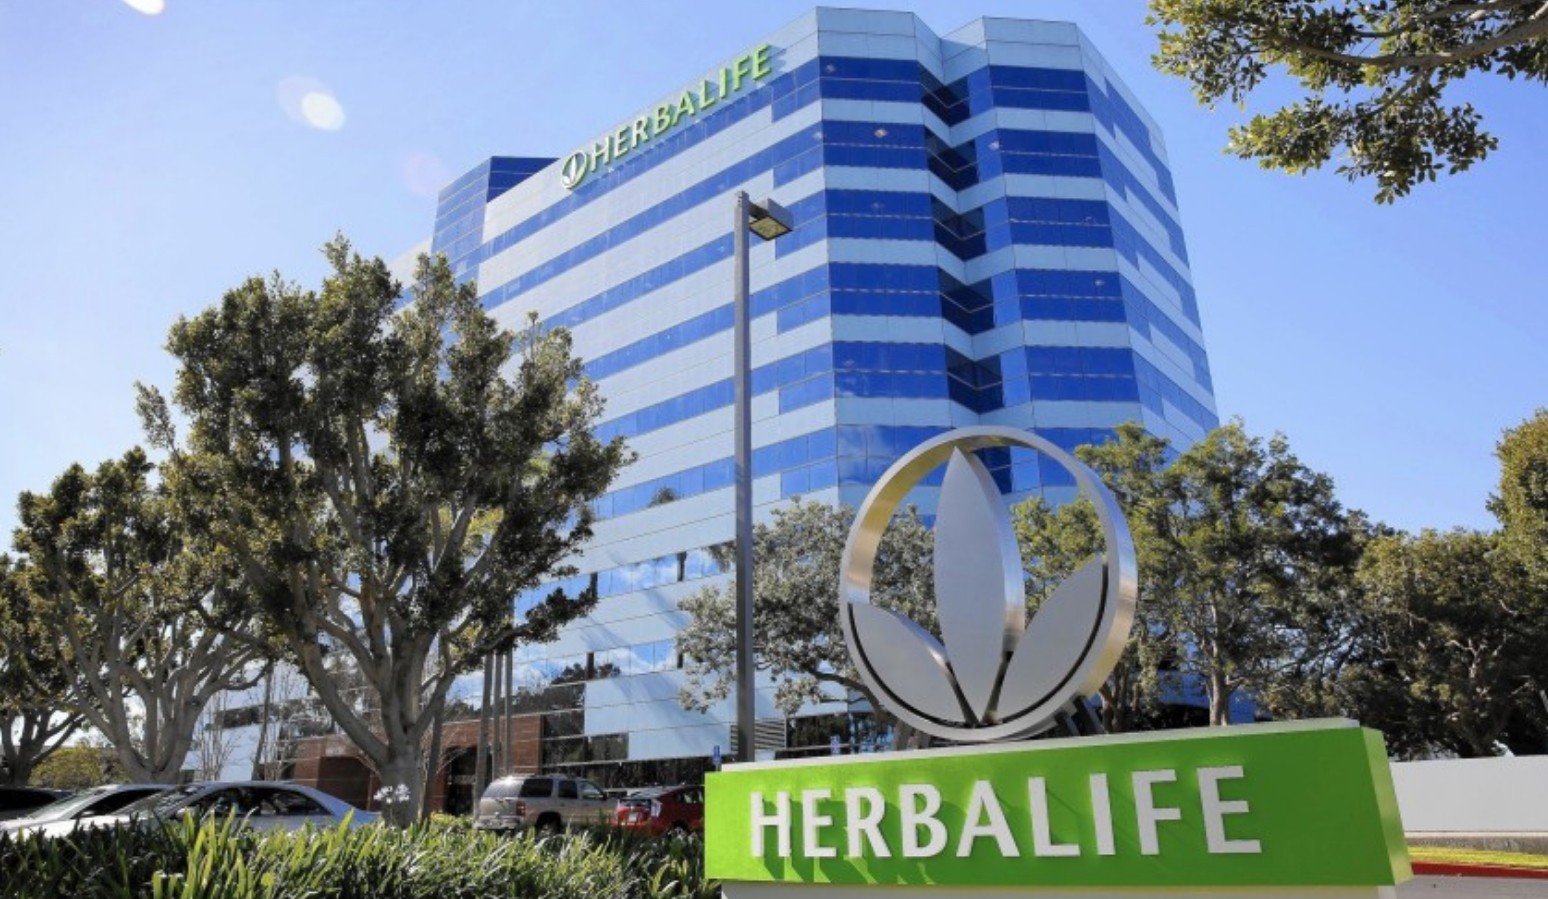 Herbalife là thương hiệu chuyên kinh doanh các chế phẩm cung cấp dinh dưỡng cùng nhiều công dụng khác